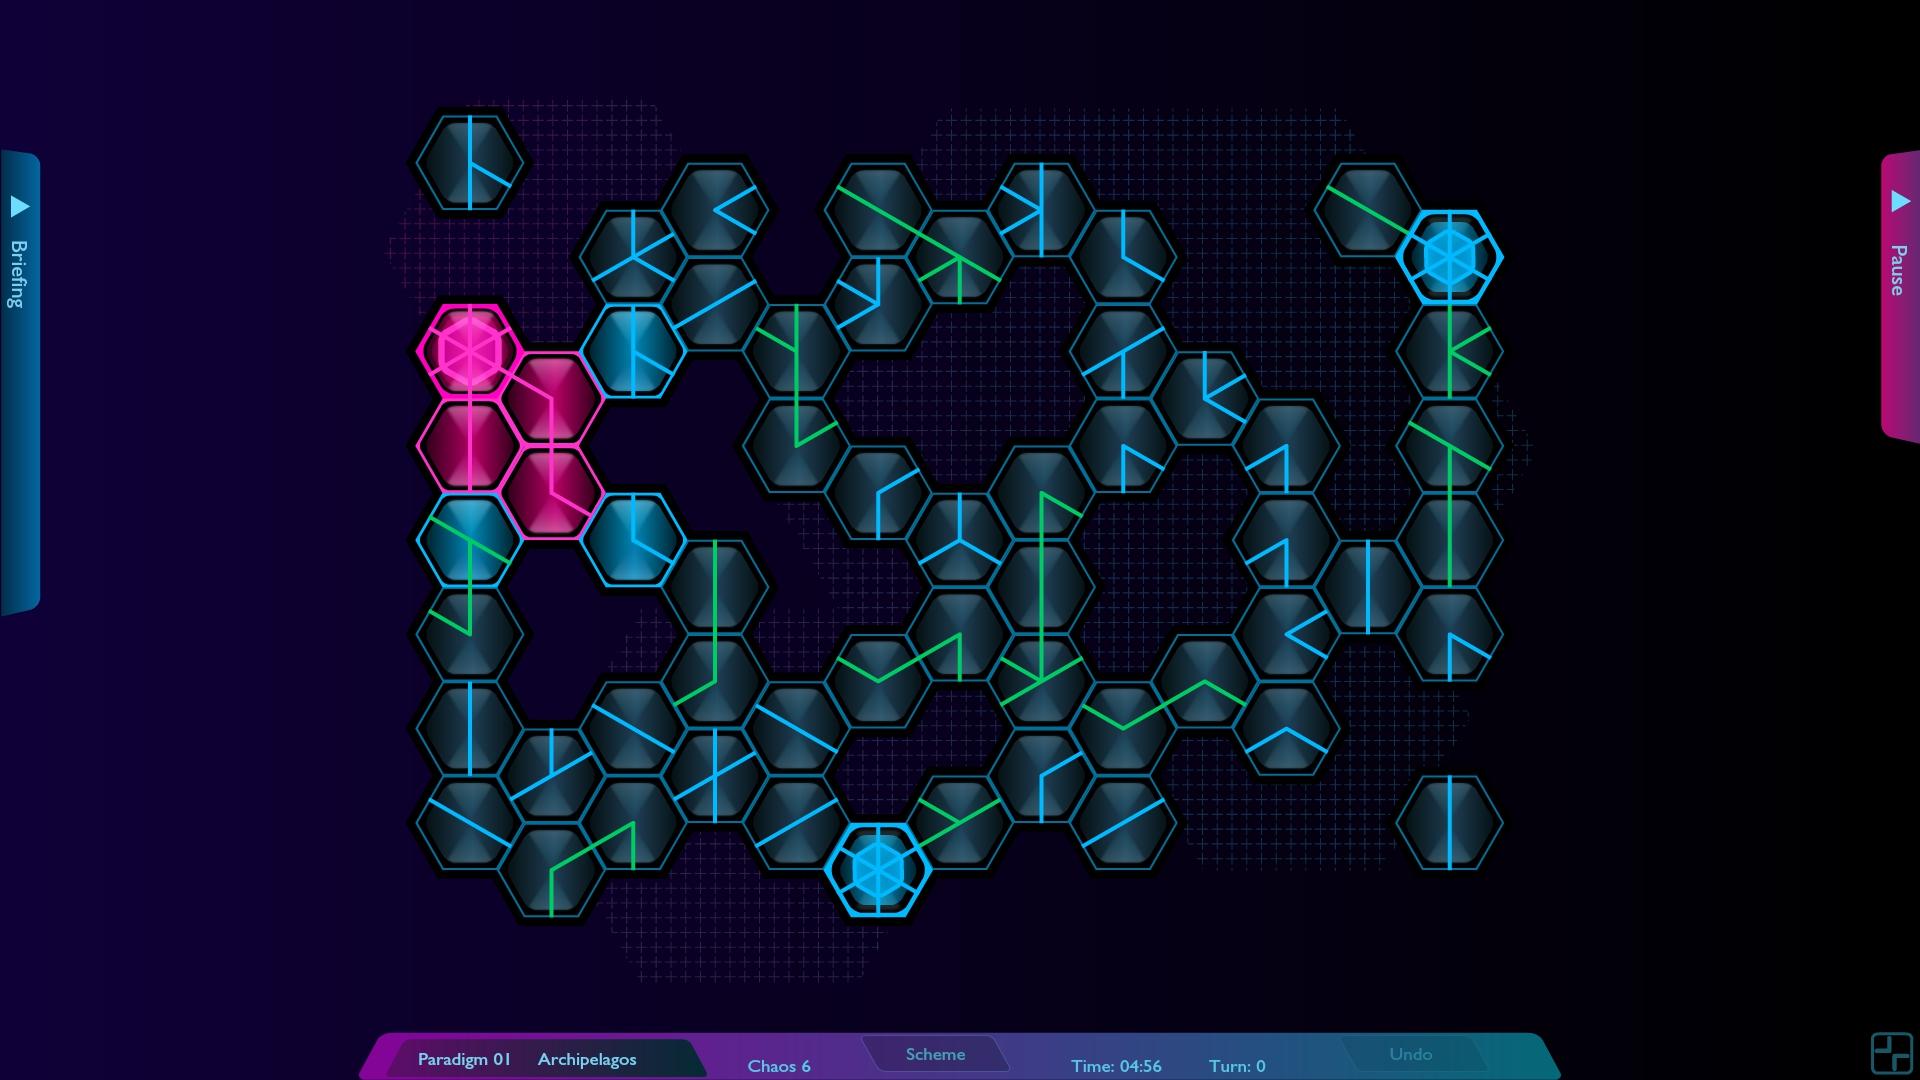 Screenshot №15 from game Hexoscope